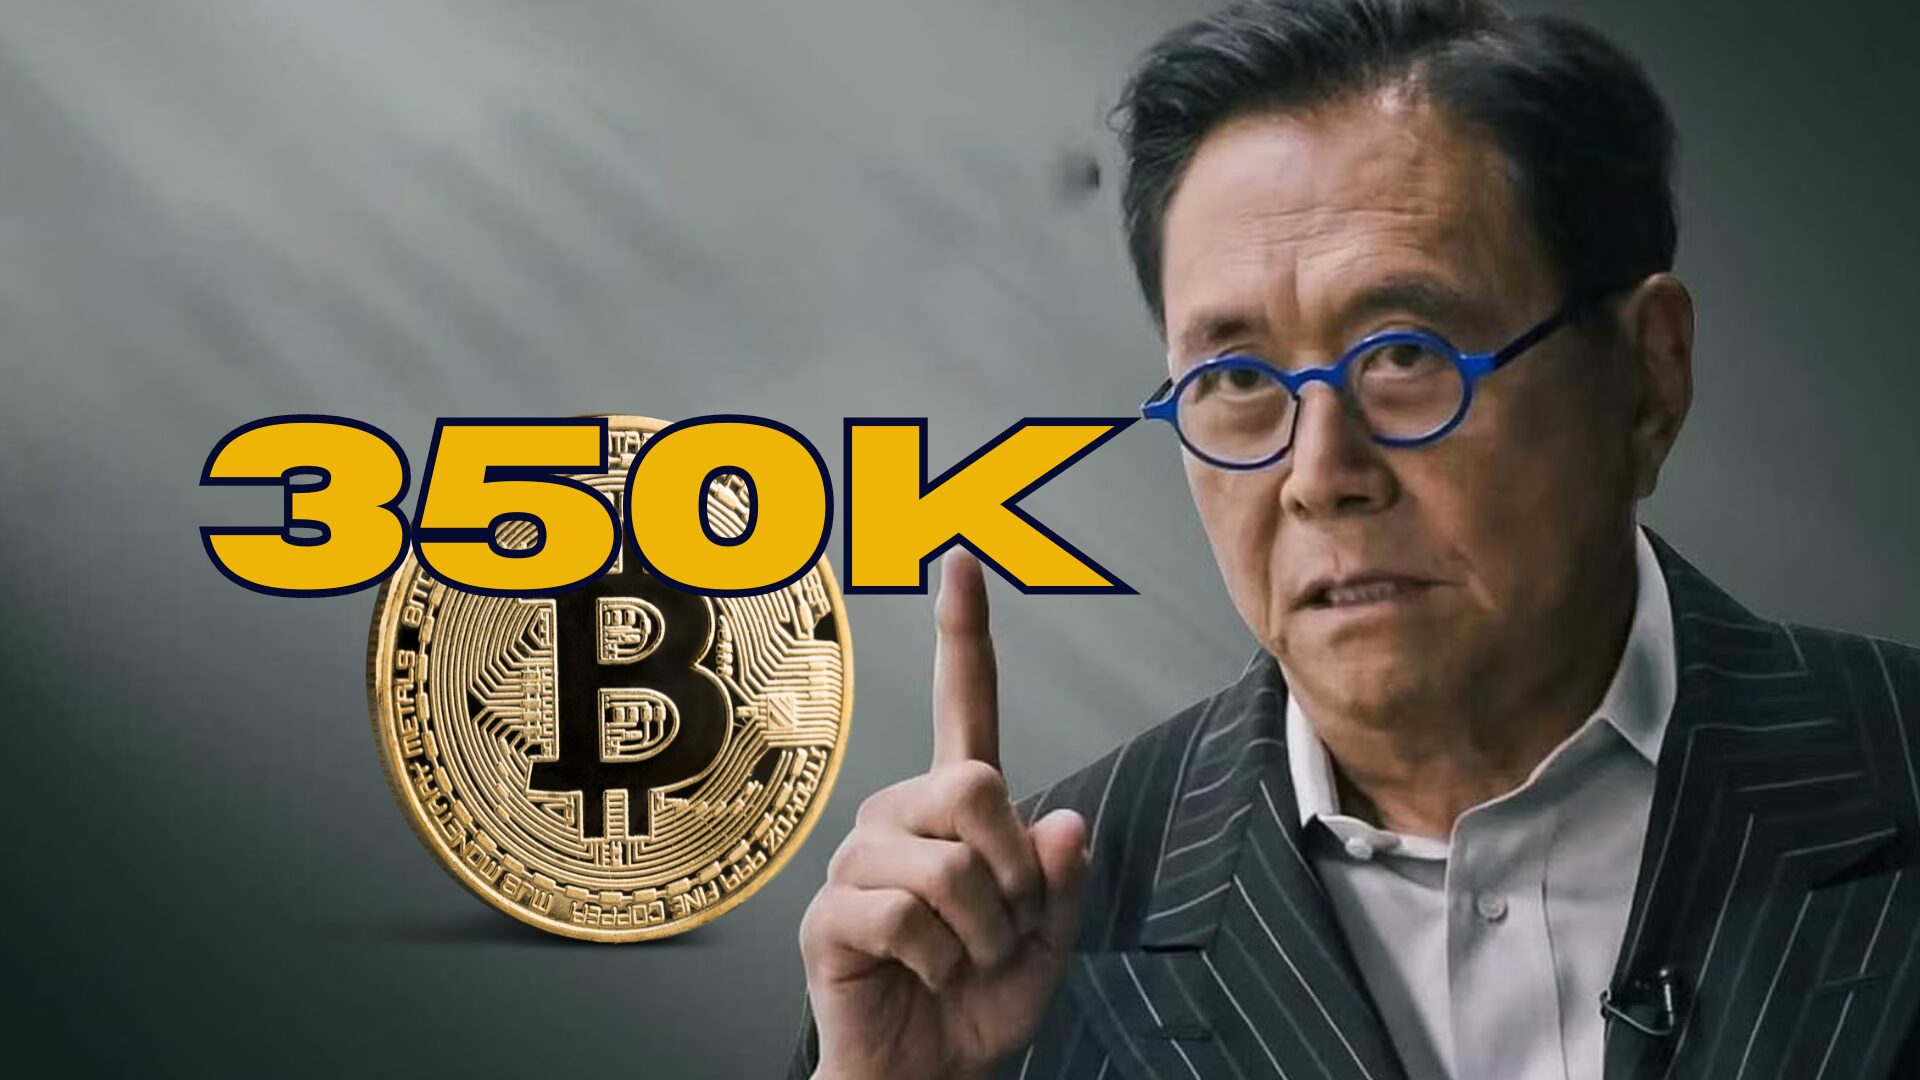 Robert Kiyosaki memprediksi Bitcoin akan melonjak hingga $350K